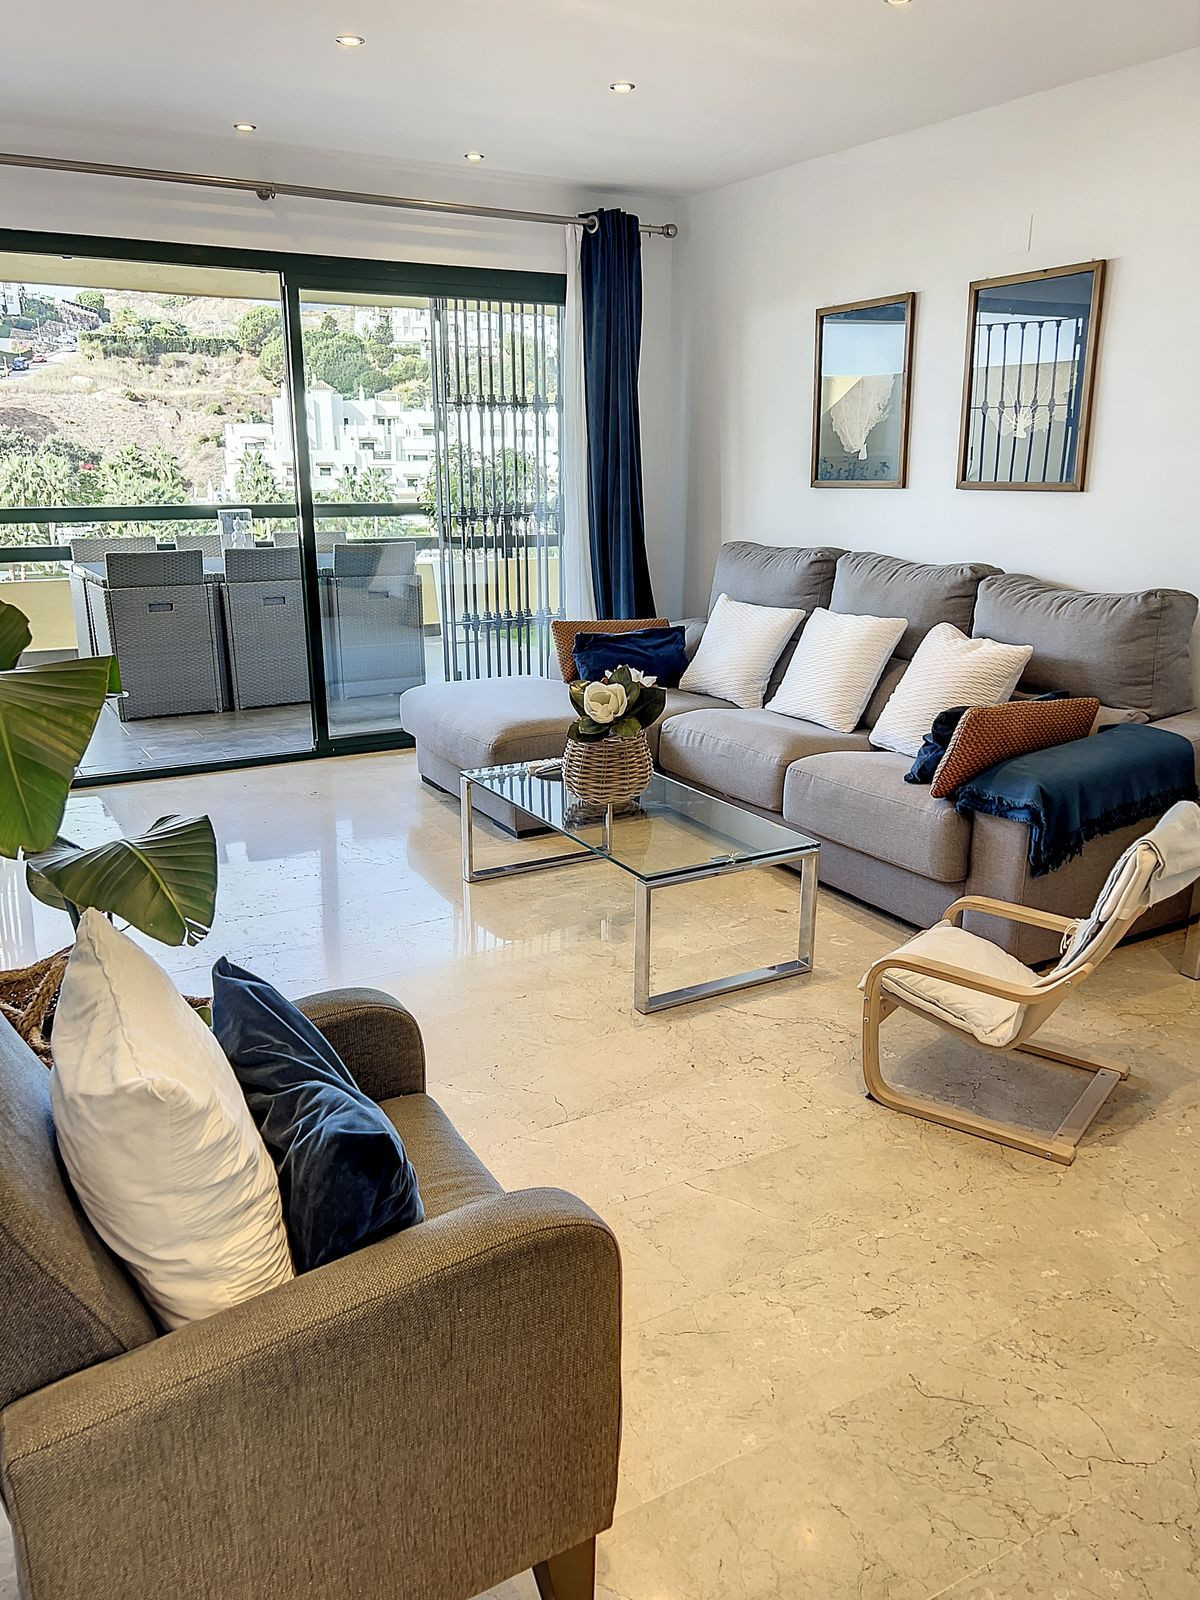 Apartment Ground Floor in Estepona, Costa del Sol
